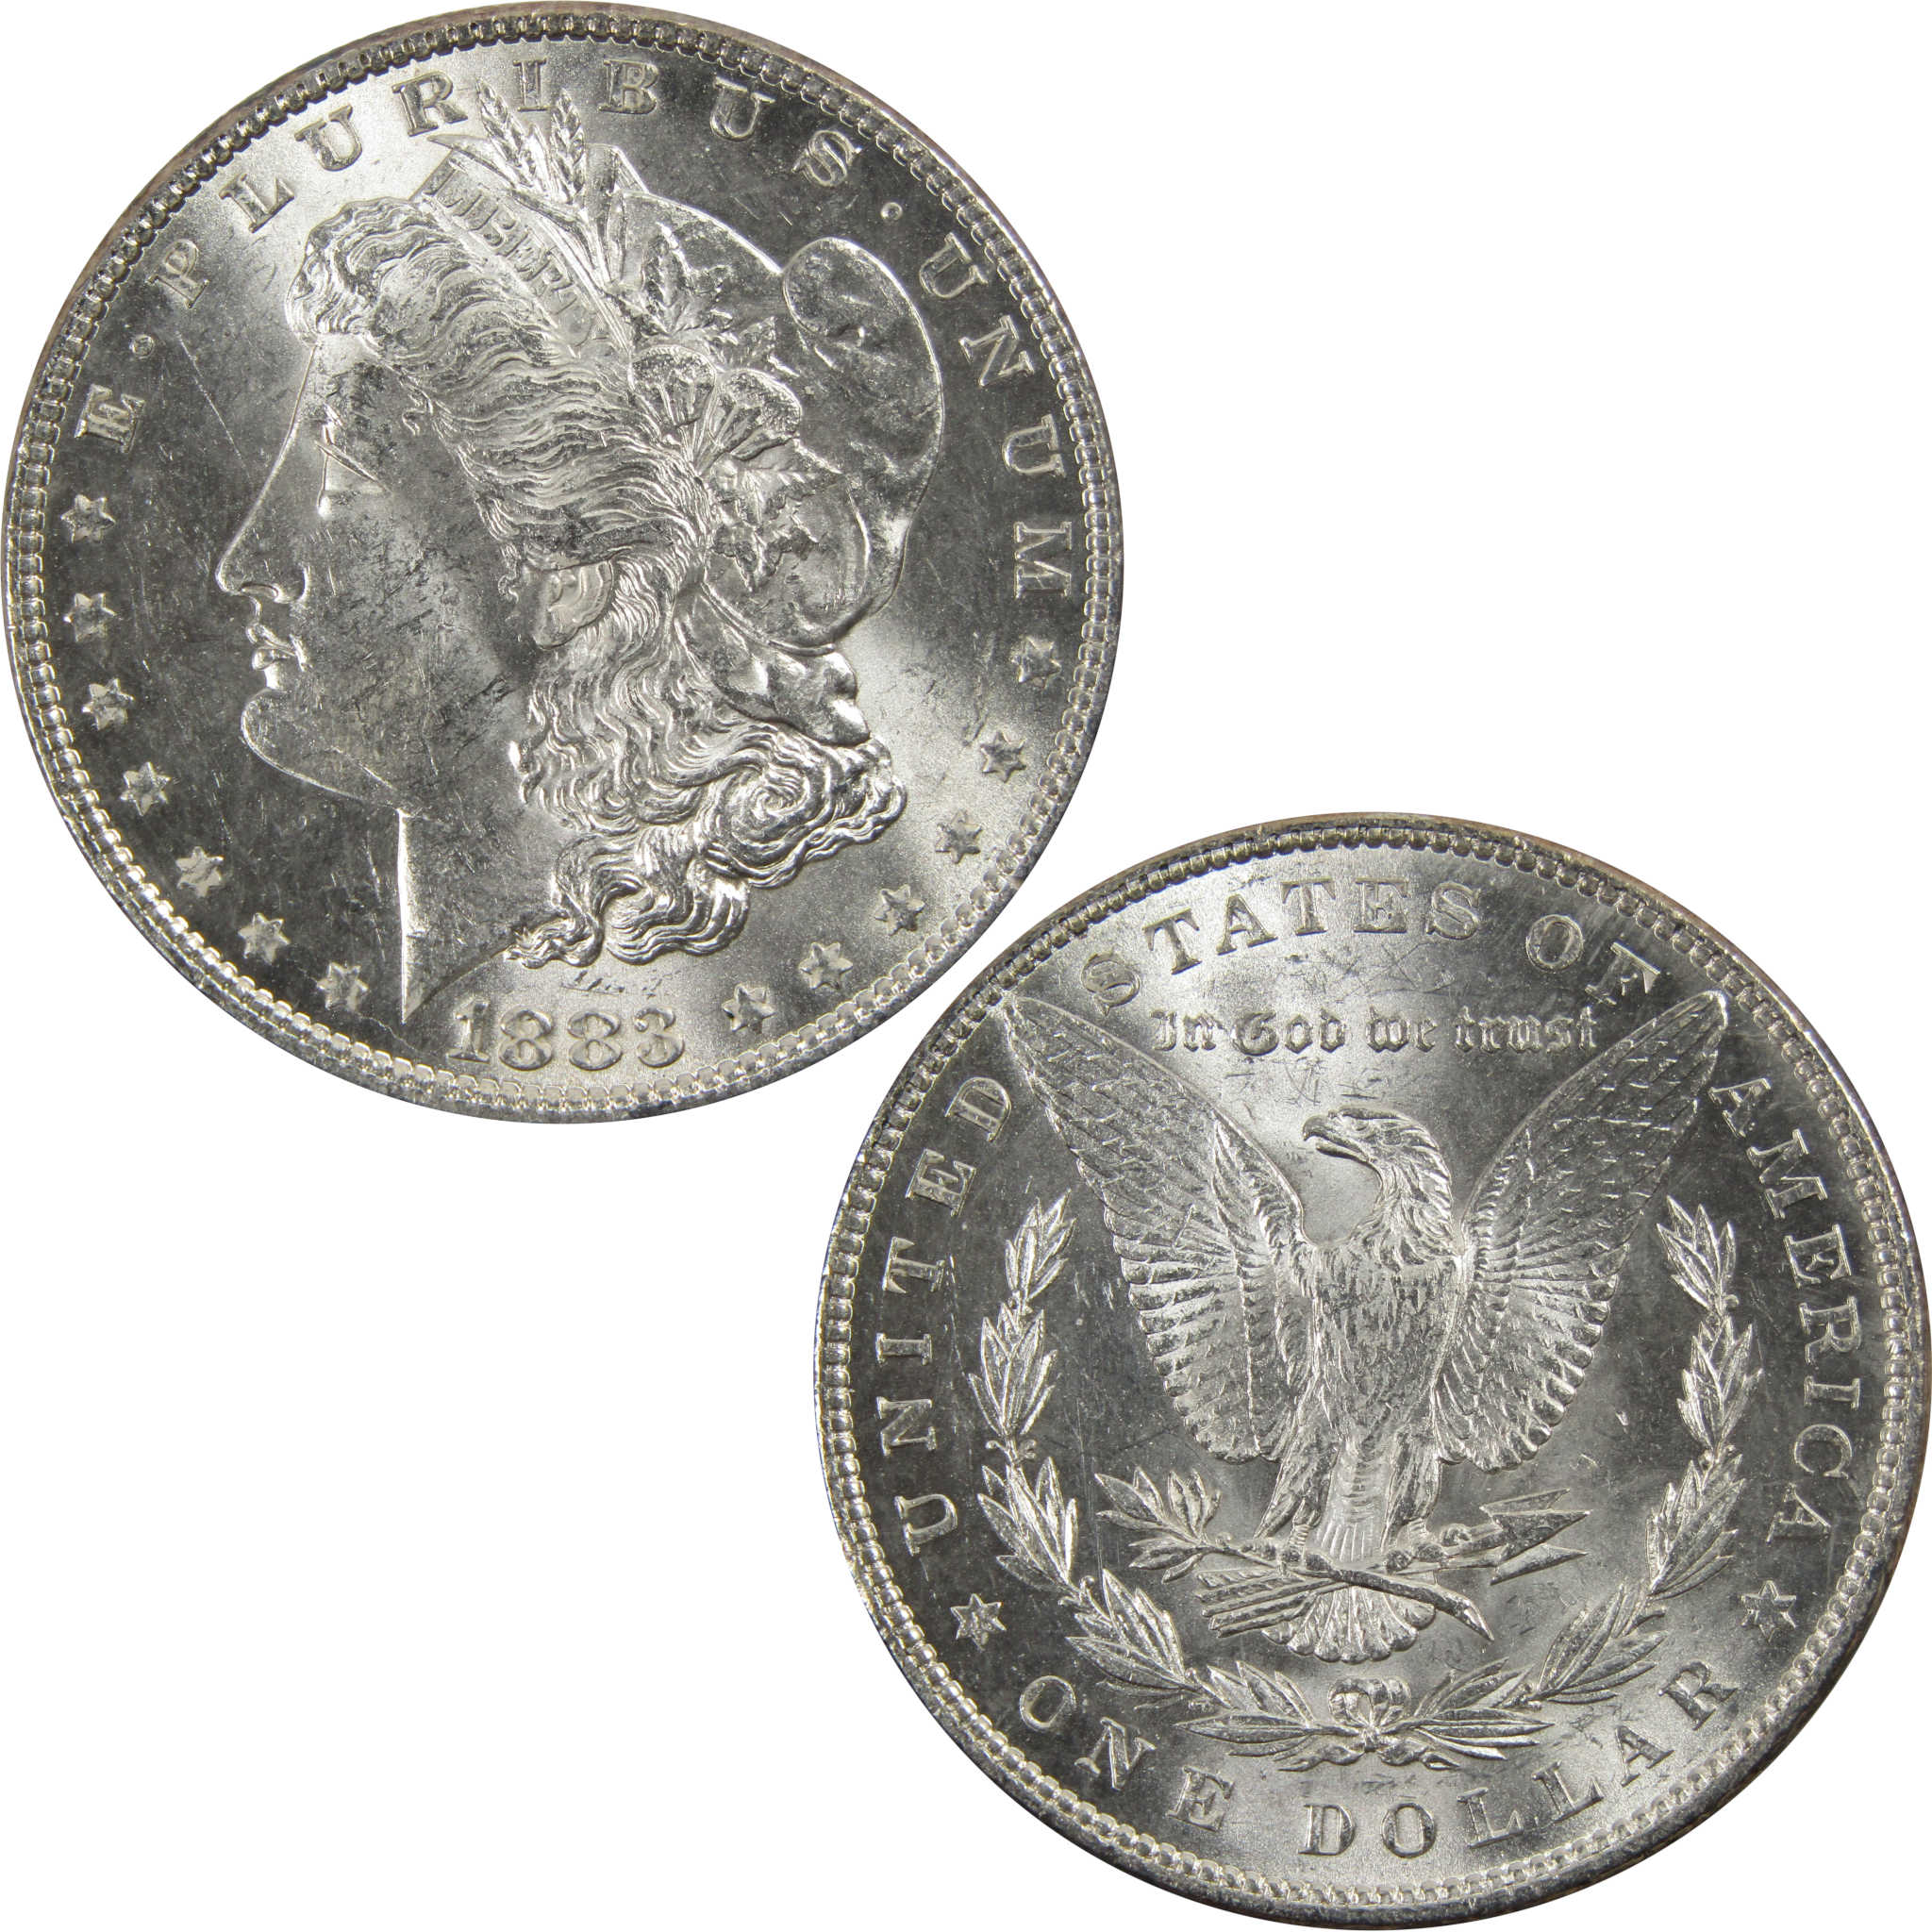 1883 Morgan Dollar BU Uncirculated 90% Silver $1 Coin SKU:I5176 - Morgan coin - Morgan silver dollar - Morgan silver dollar for sale - Profile Coins &amp; Collectibles